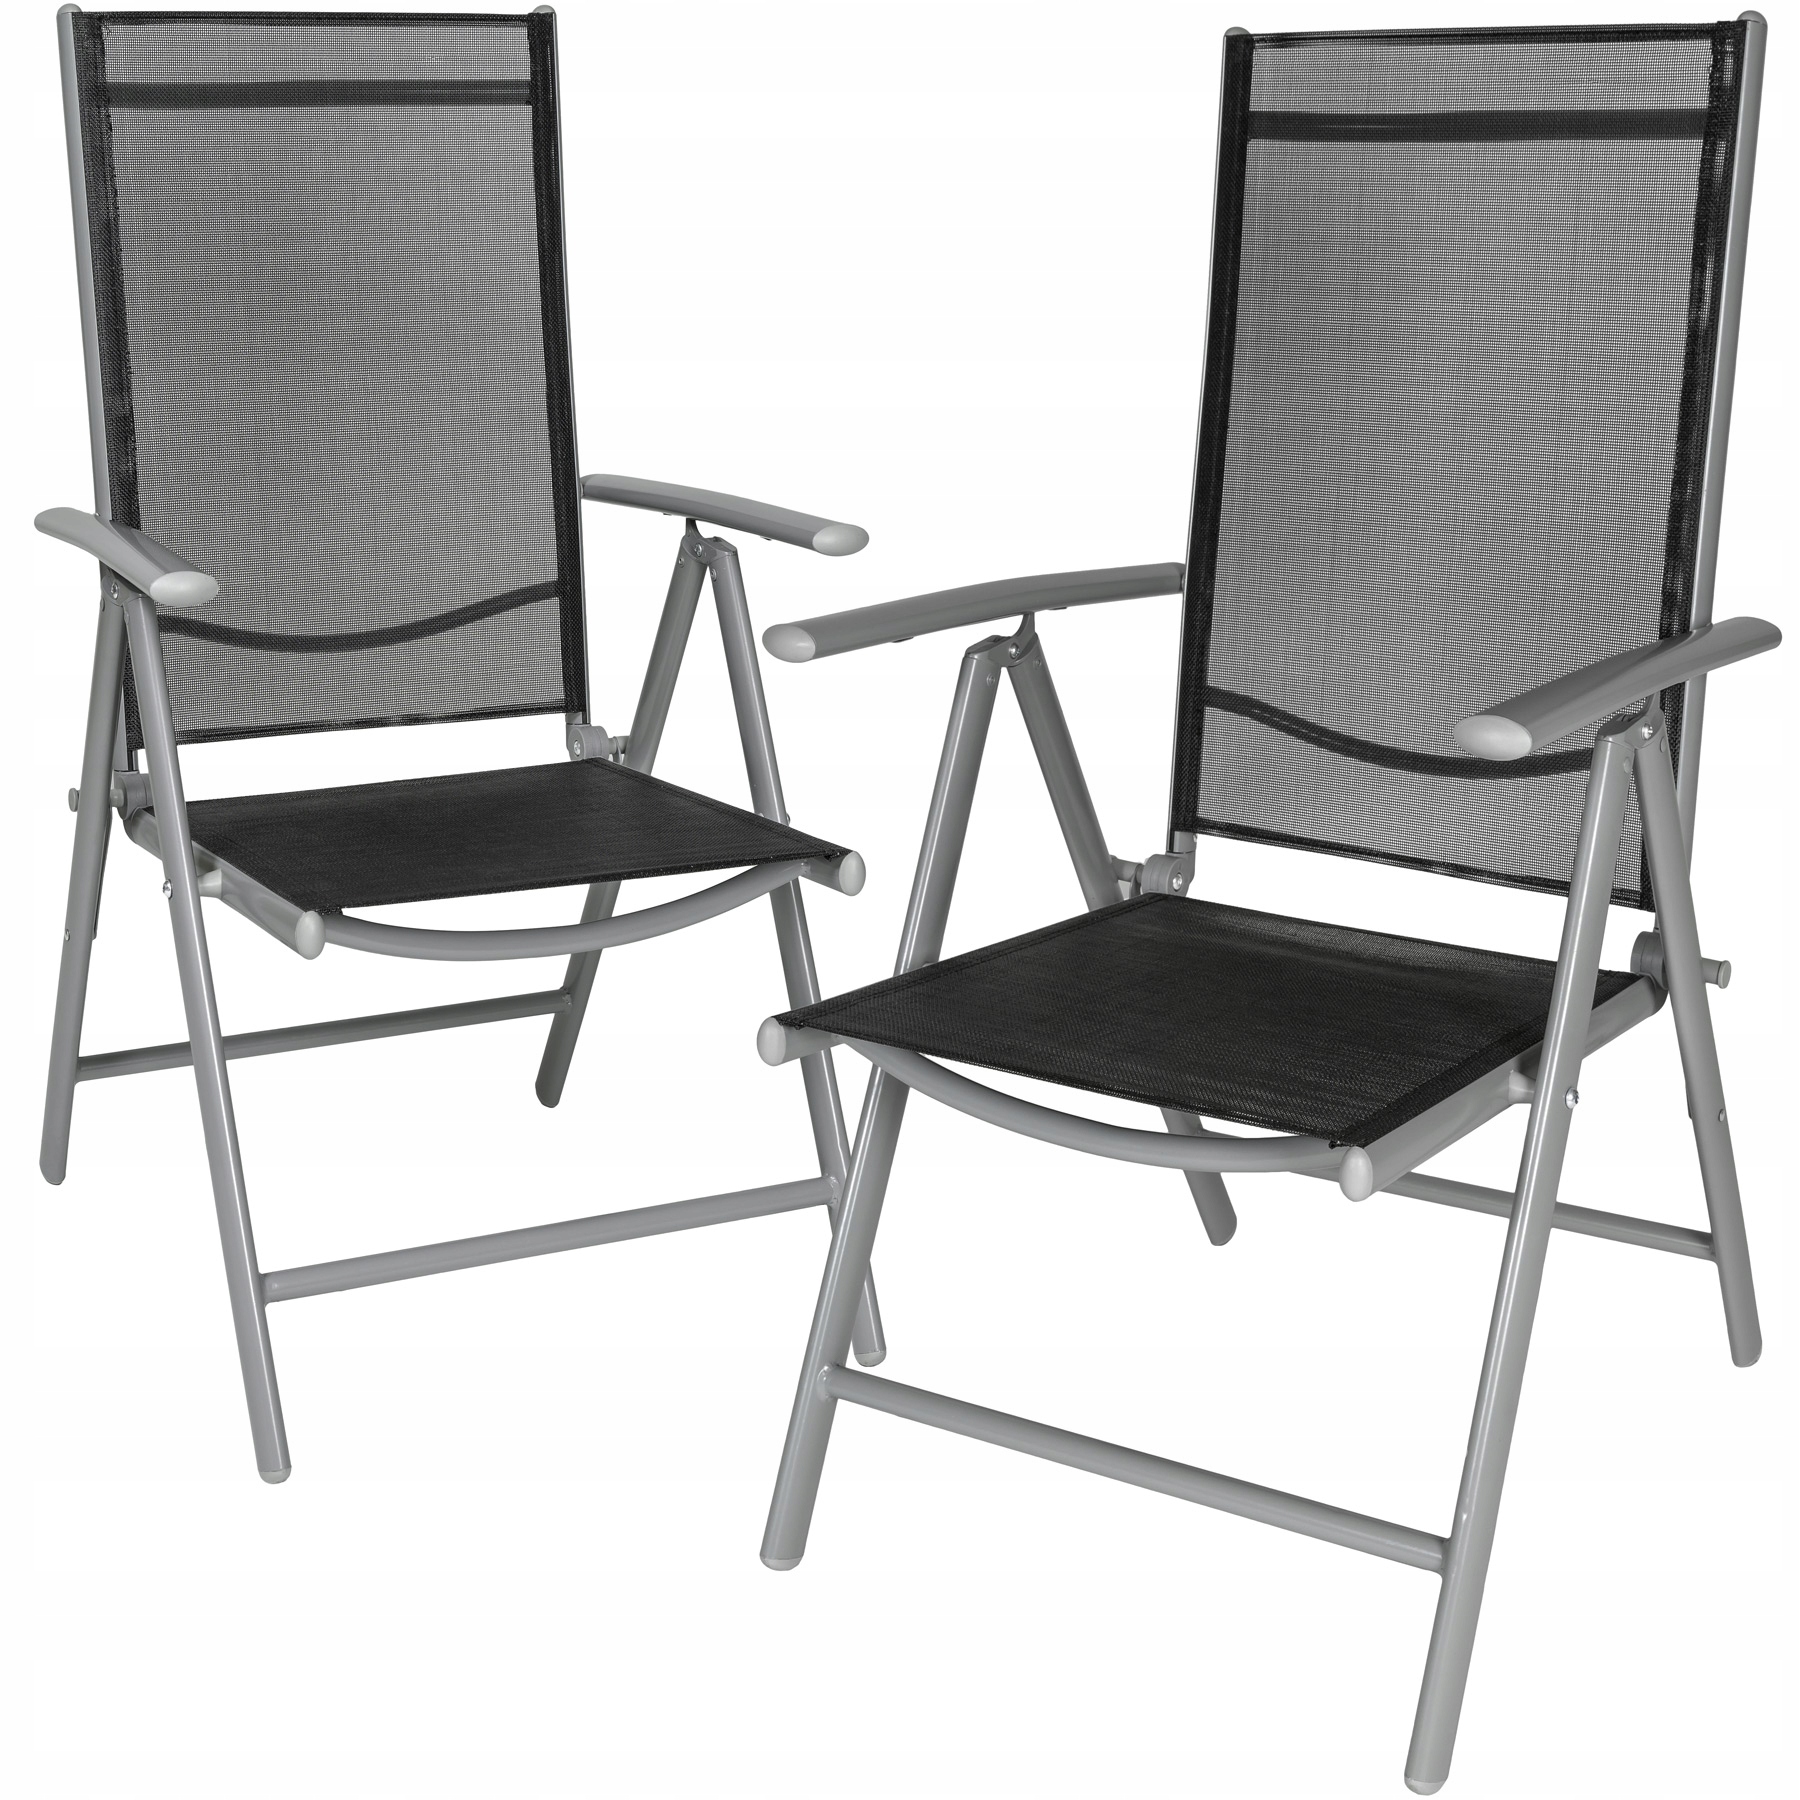 Алюминиевые складные стулья. Стул Aro стальной. Стул Aro стальной артикул 467481. Садовые складные стулья. Кресло садовое раскладное.